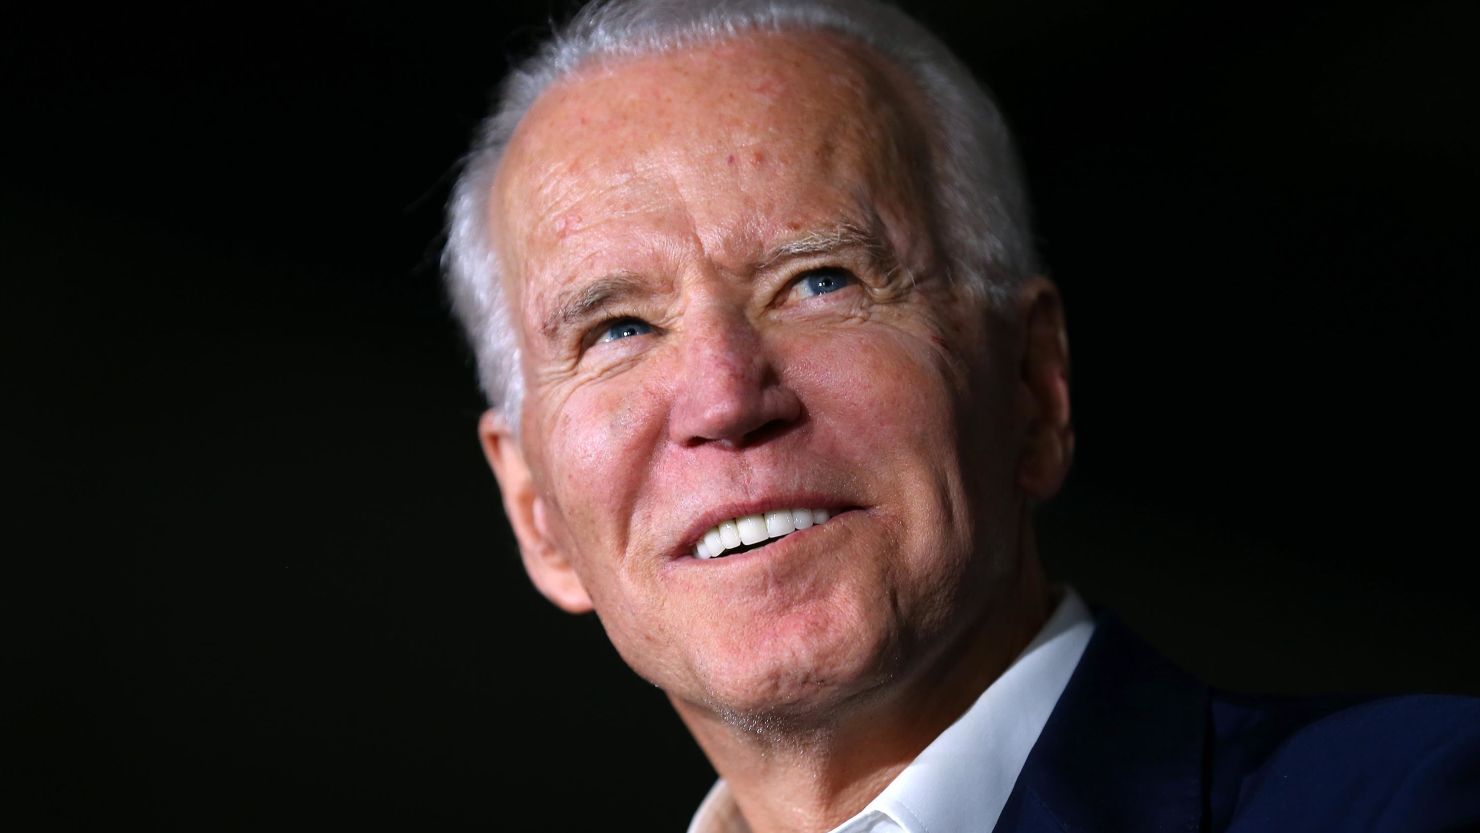 Joe Biden’s fundraising surged to 46.7 million last month CNN Politics